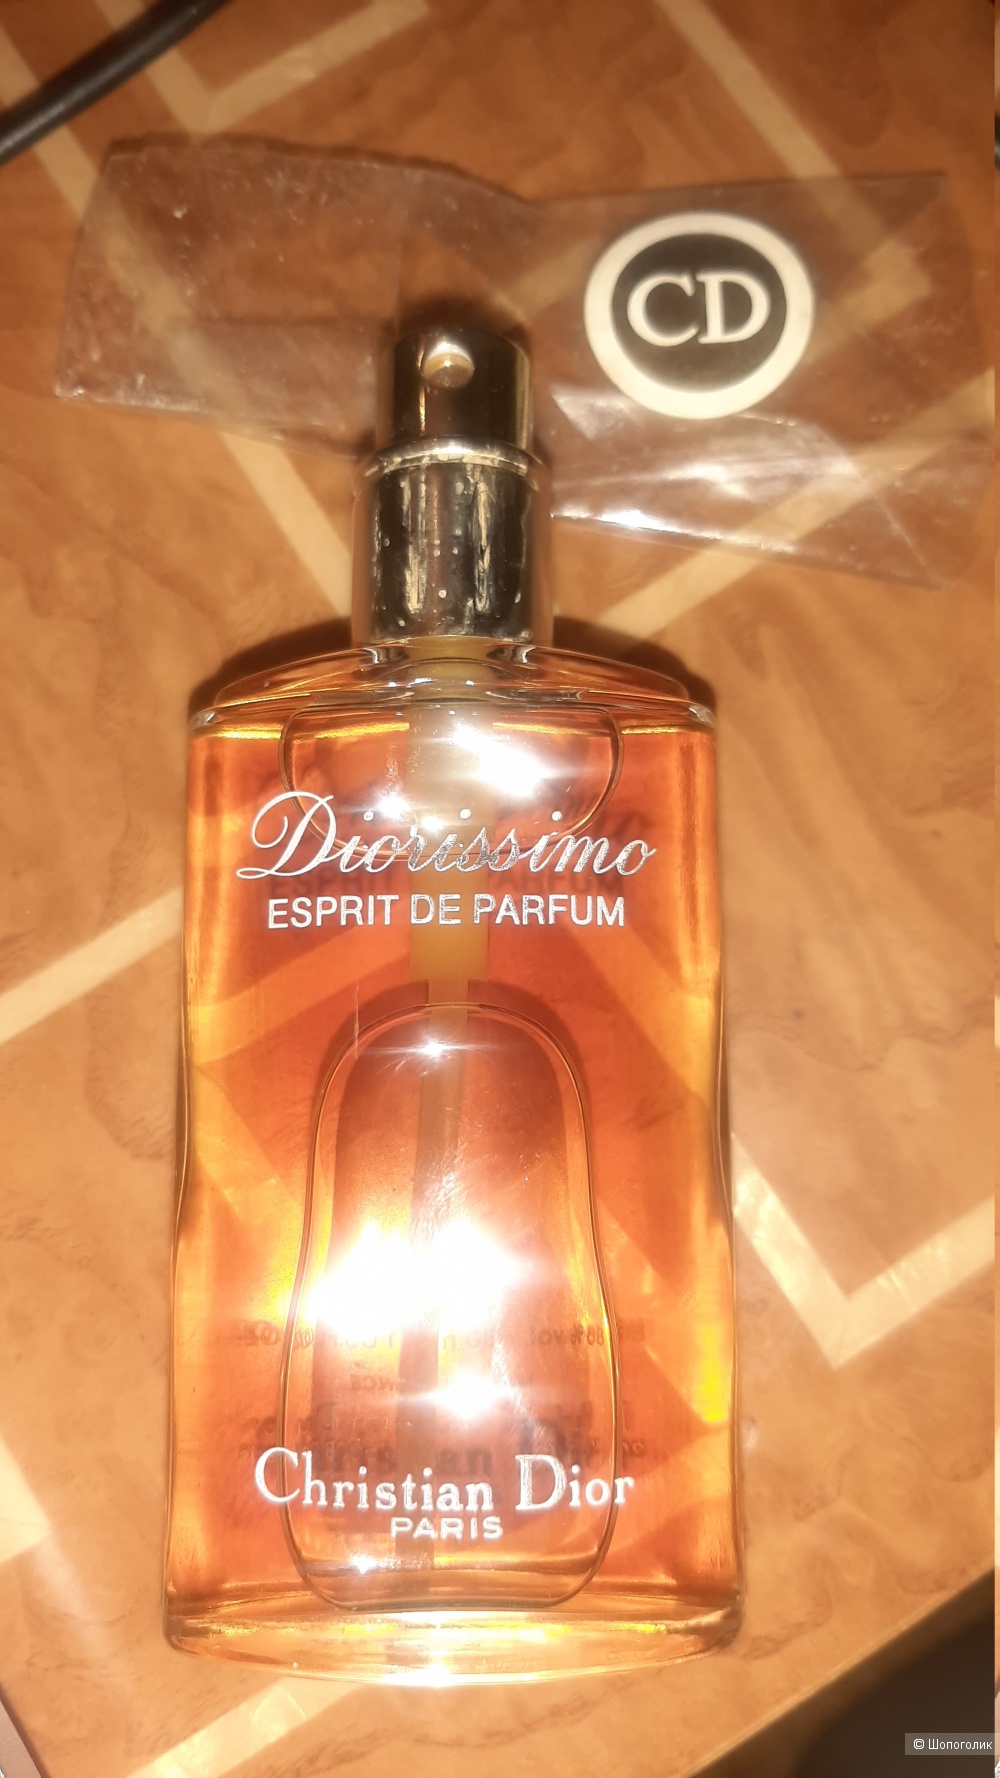 Духи Christian Dior, Diorissimo esprit de parfum,  30 мл